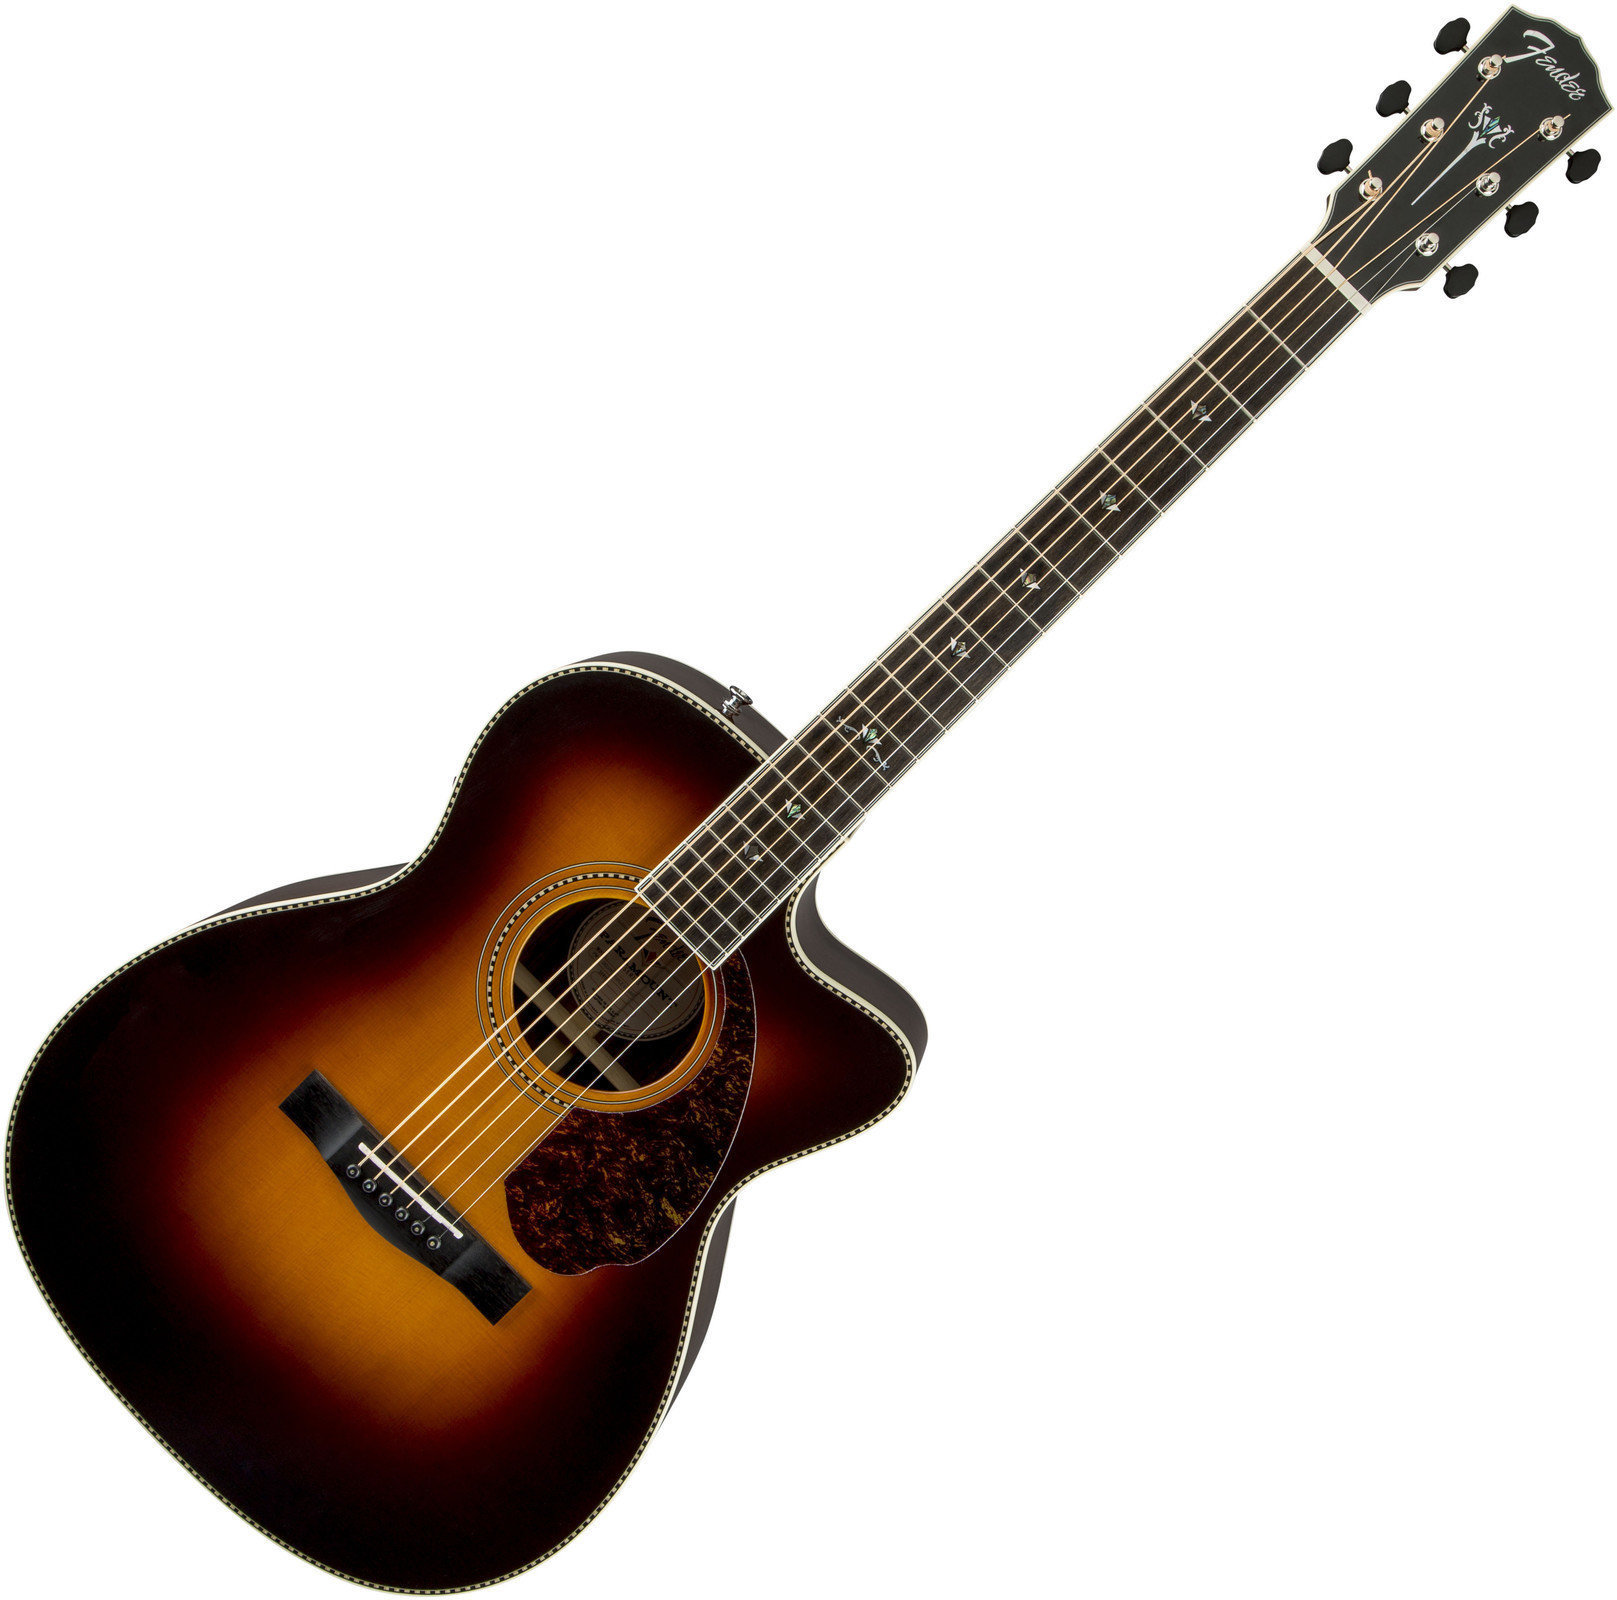 Electro-acoustic guitar Fender PM-3 Deluxe Triple 0, Vintage Sunburst